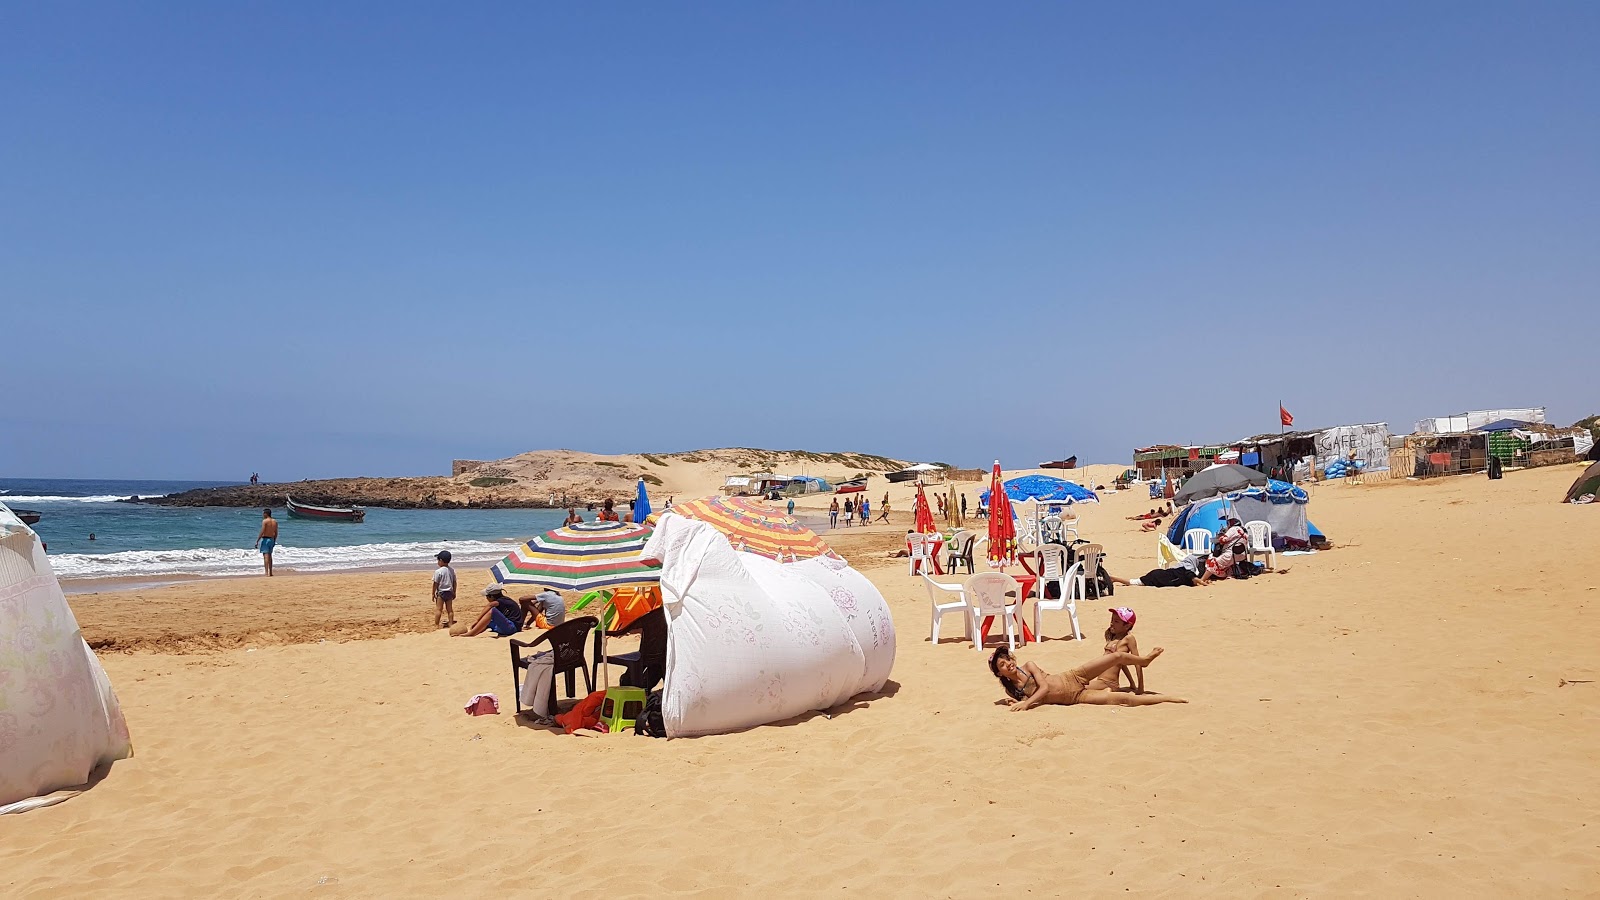 Foto de Sidi Belkheir Beach shaty sydy balkhyr ubicado en área natural